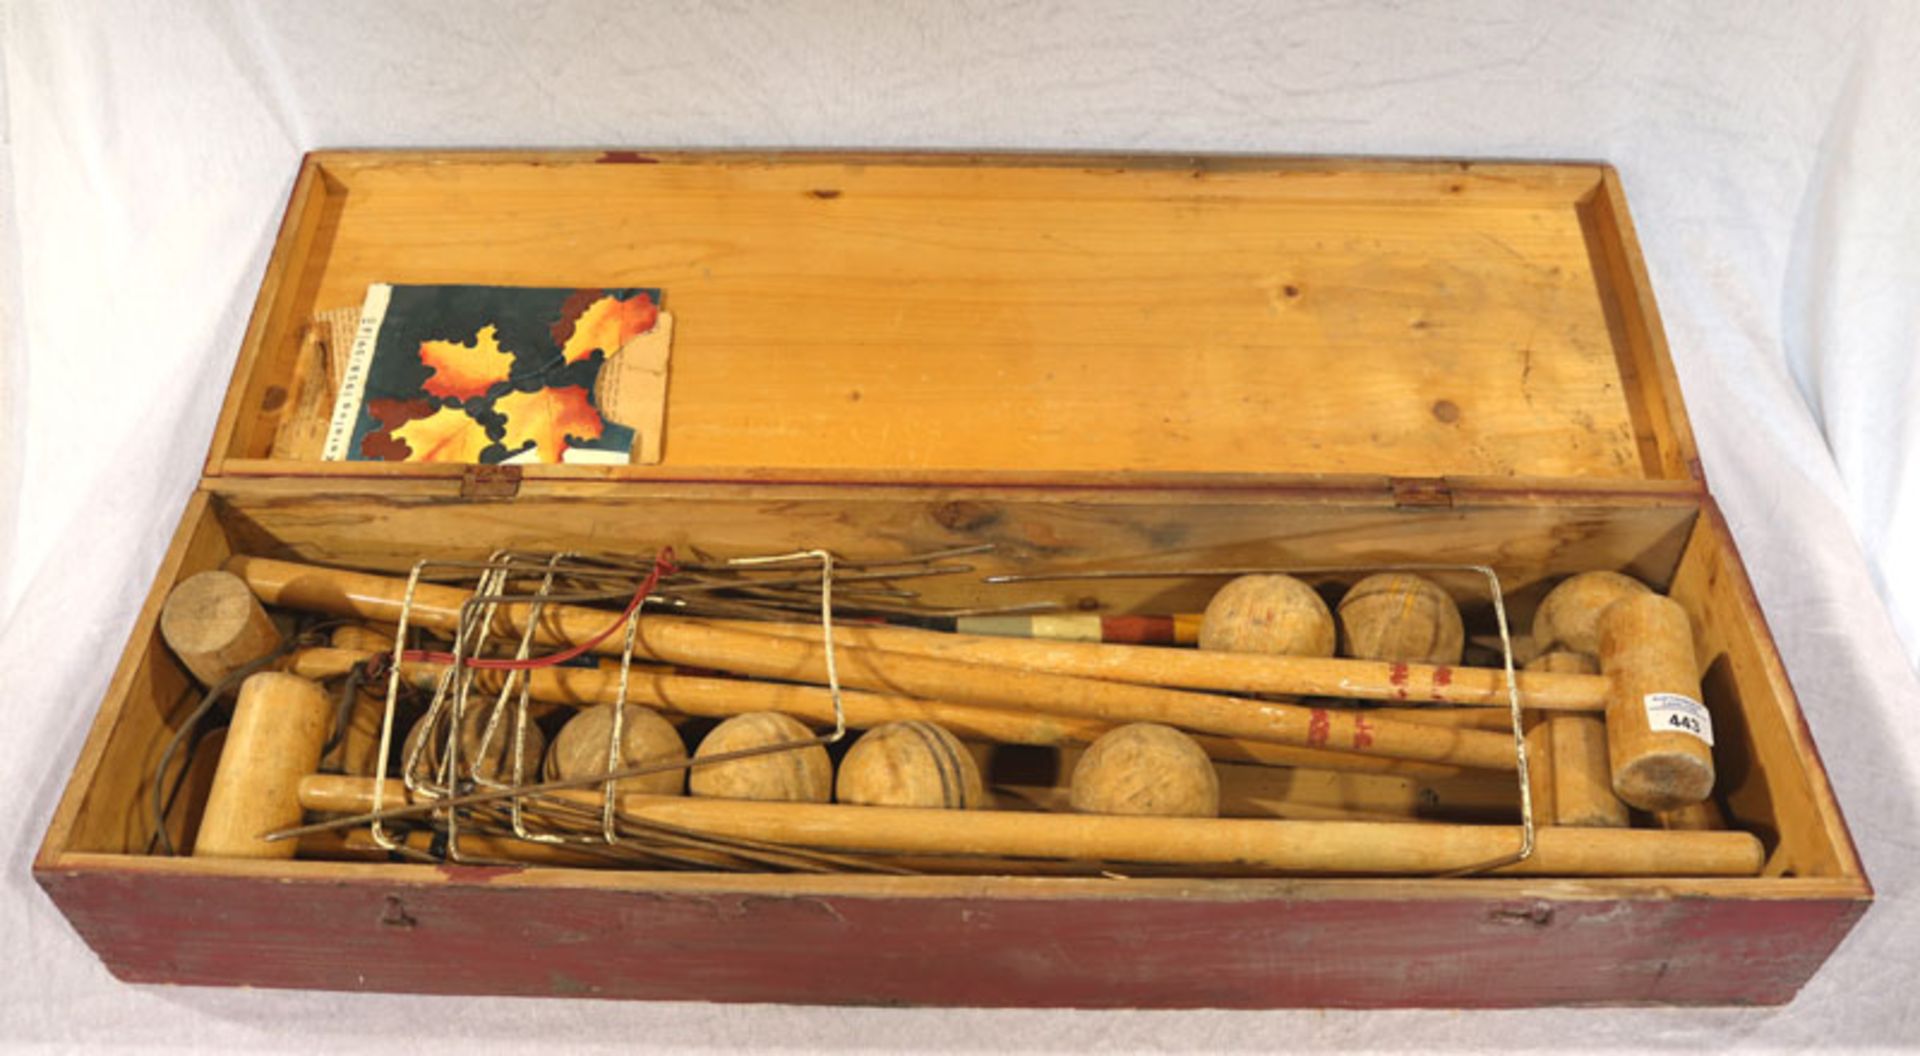 Krockettspiel in Holzkasten, starke Alters- und Gebrauchsspuren, Kasten H 15,5 cm, L 98 cm, B 26,5